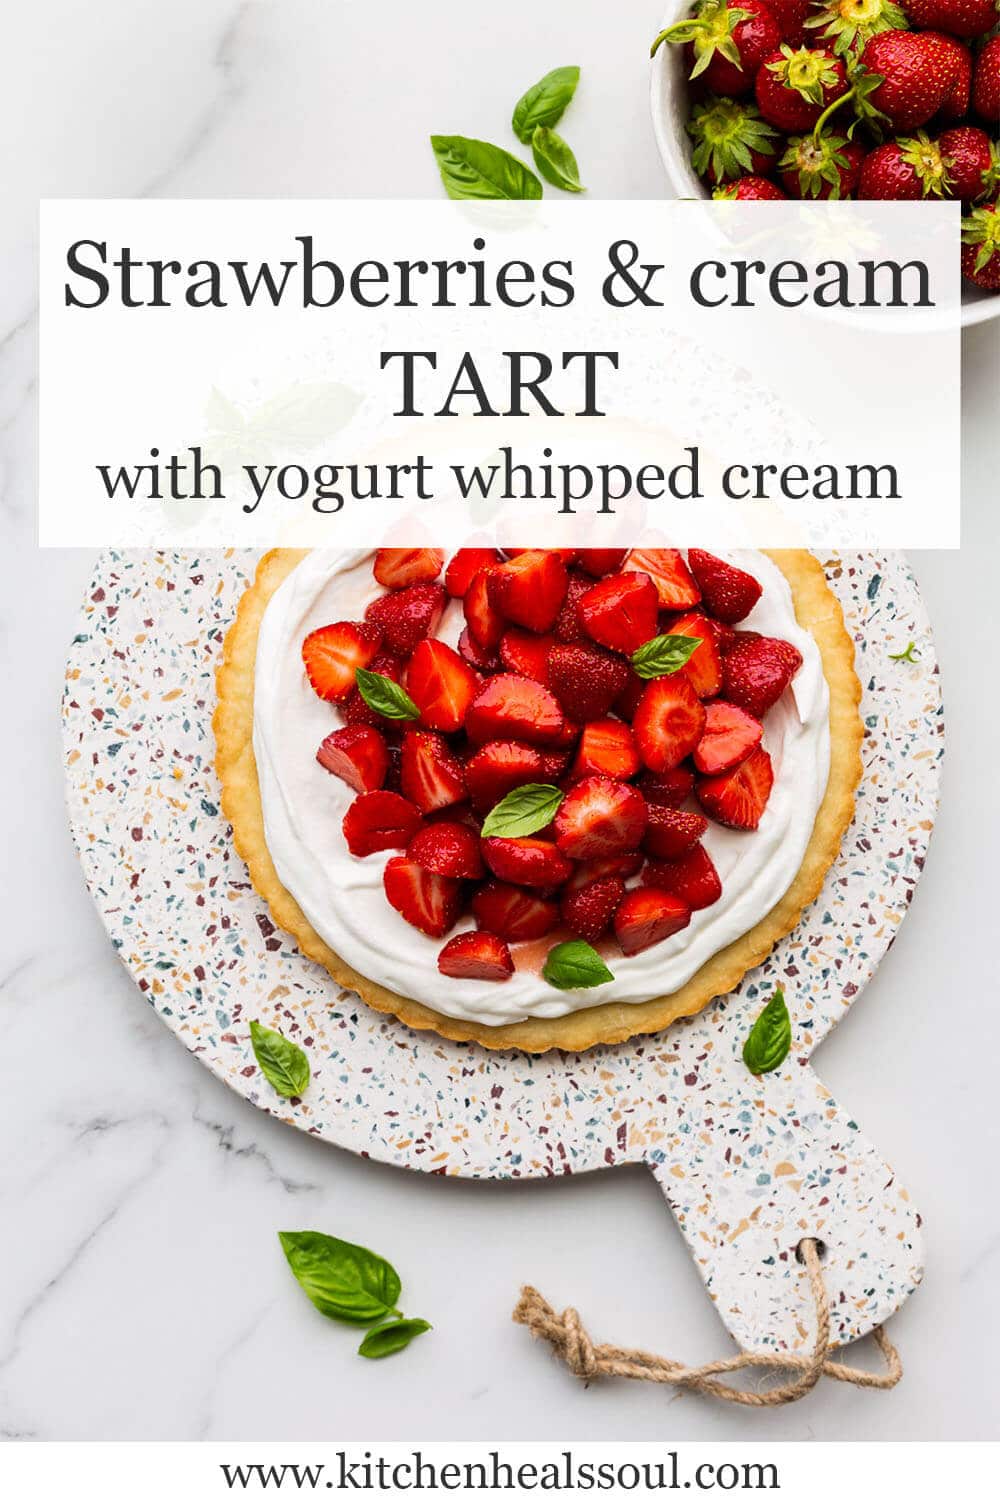 Strawberries & cream tart with yogurt whipped cream.